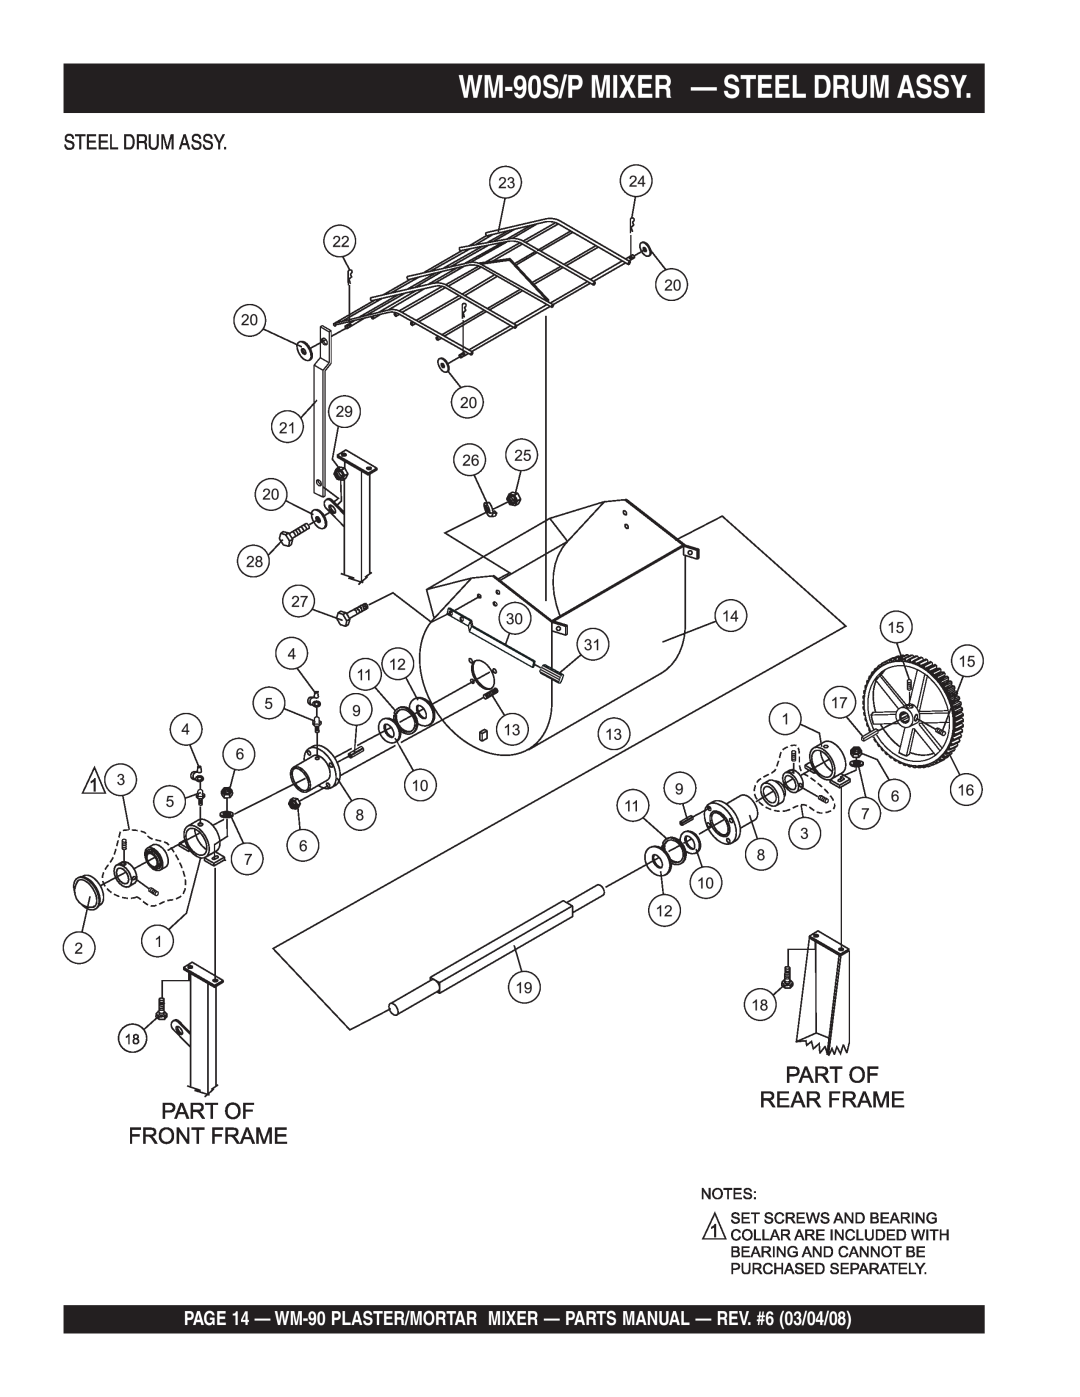 Multiquip WM-90P manual WM-90S/PMIXER - STEEL DRUM ASSY, Steel Drum Assy 